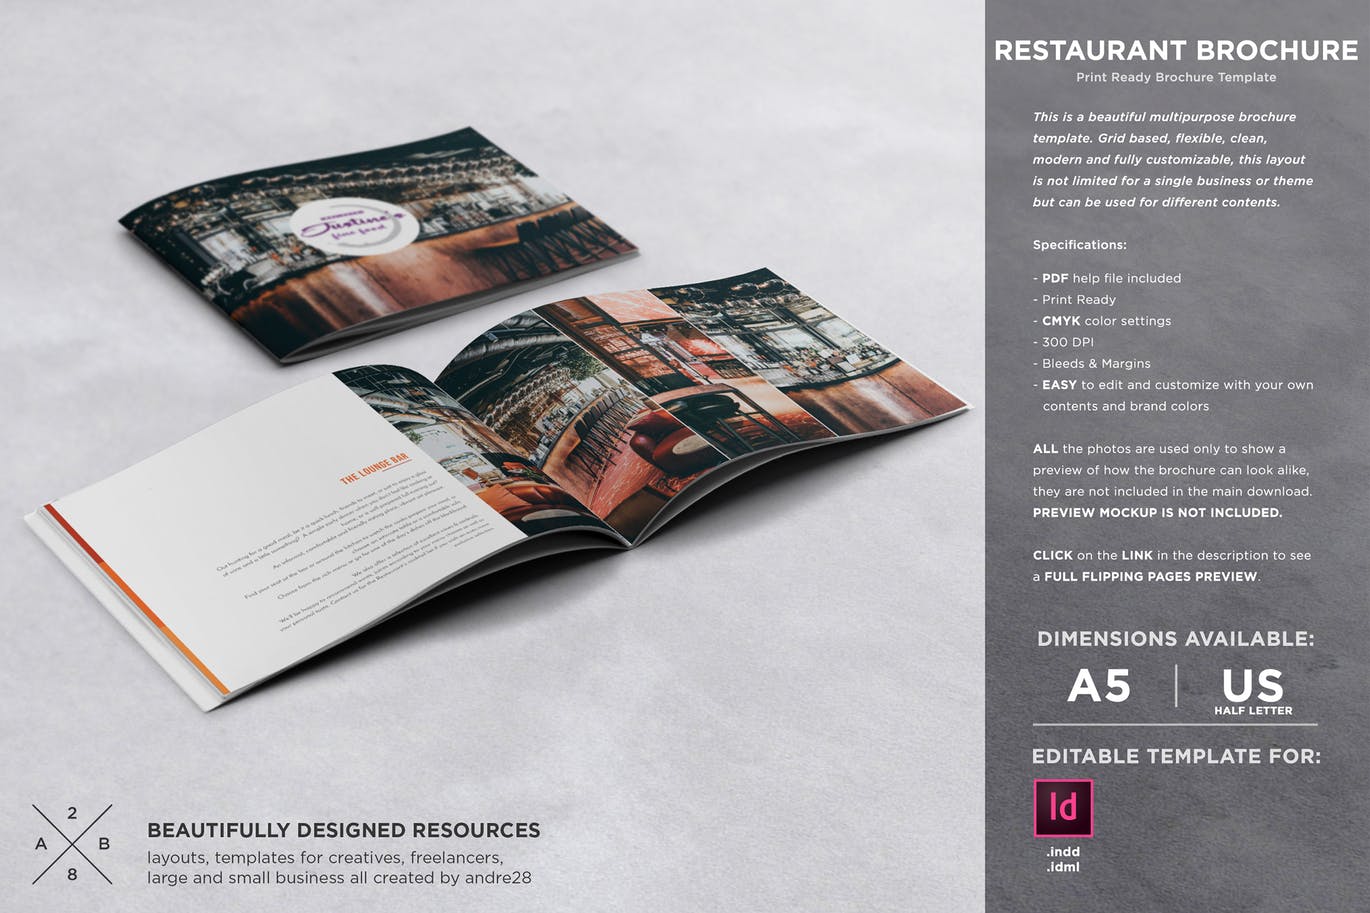 高档西餐厅宣传画册设计模板 Restaurant Brochure Template插图